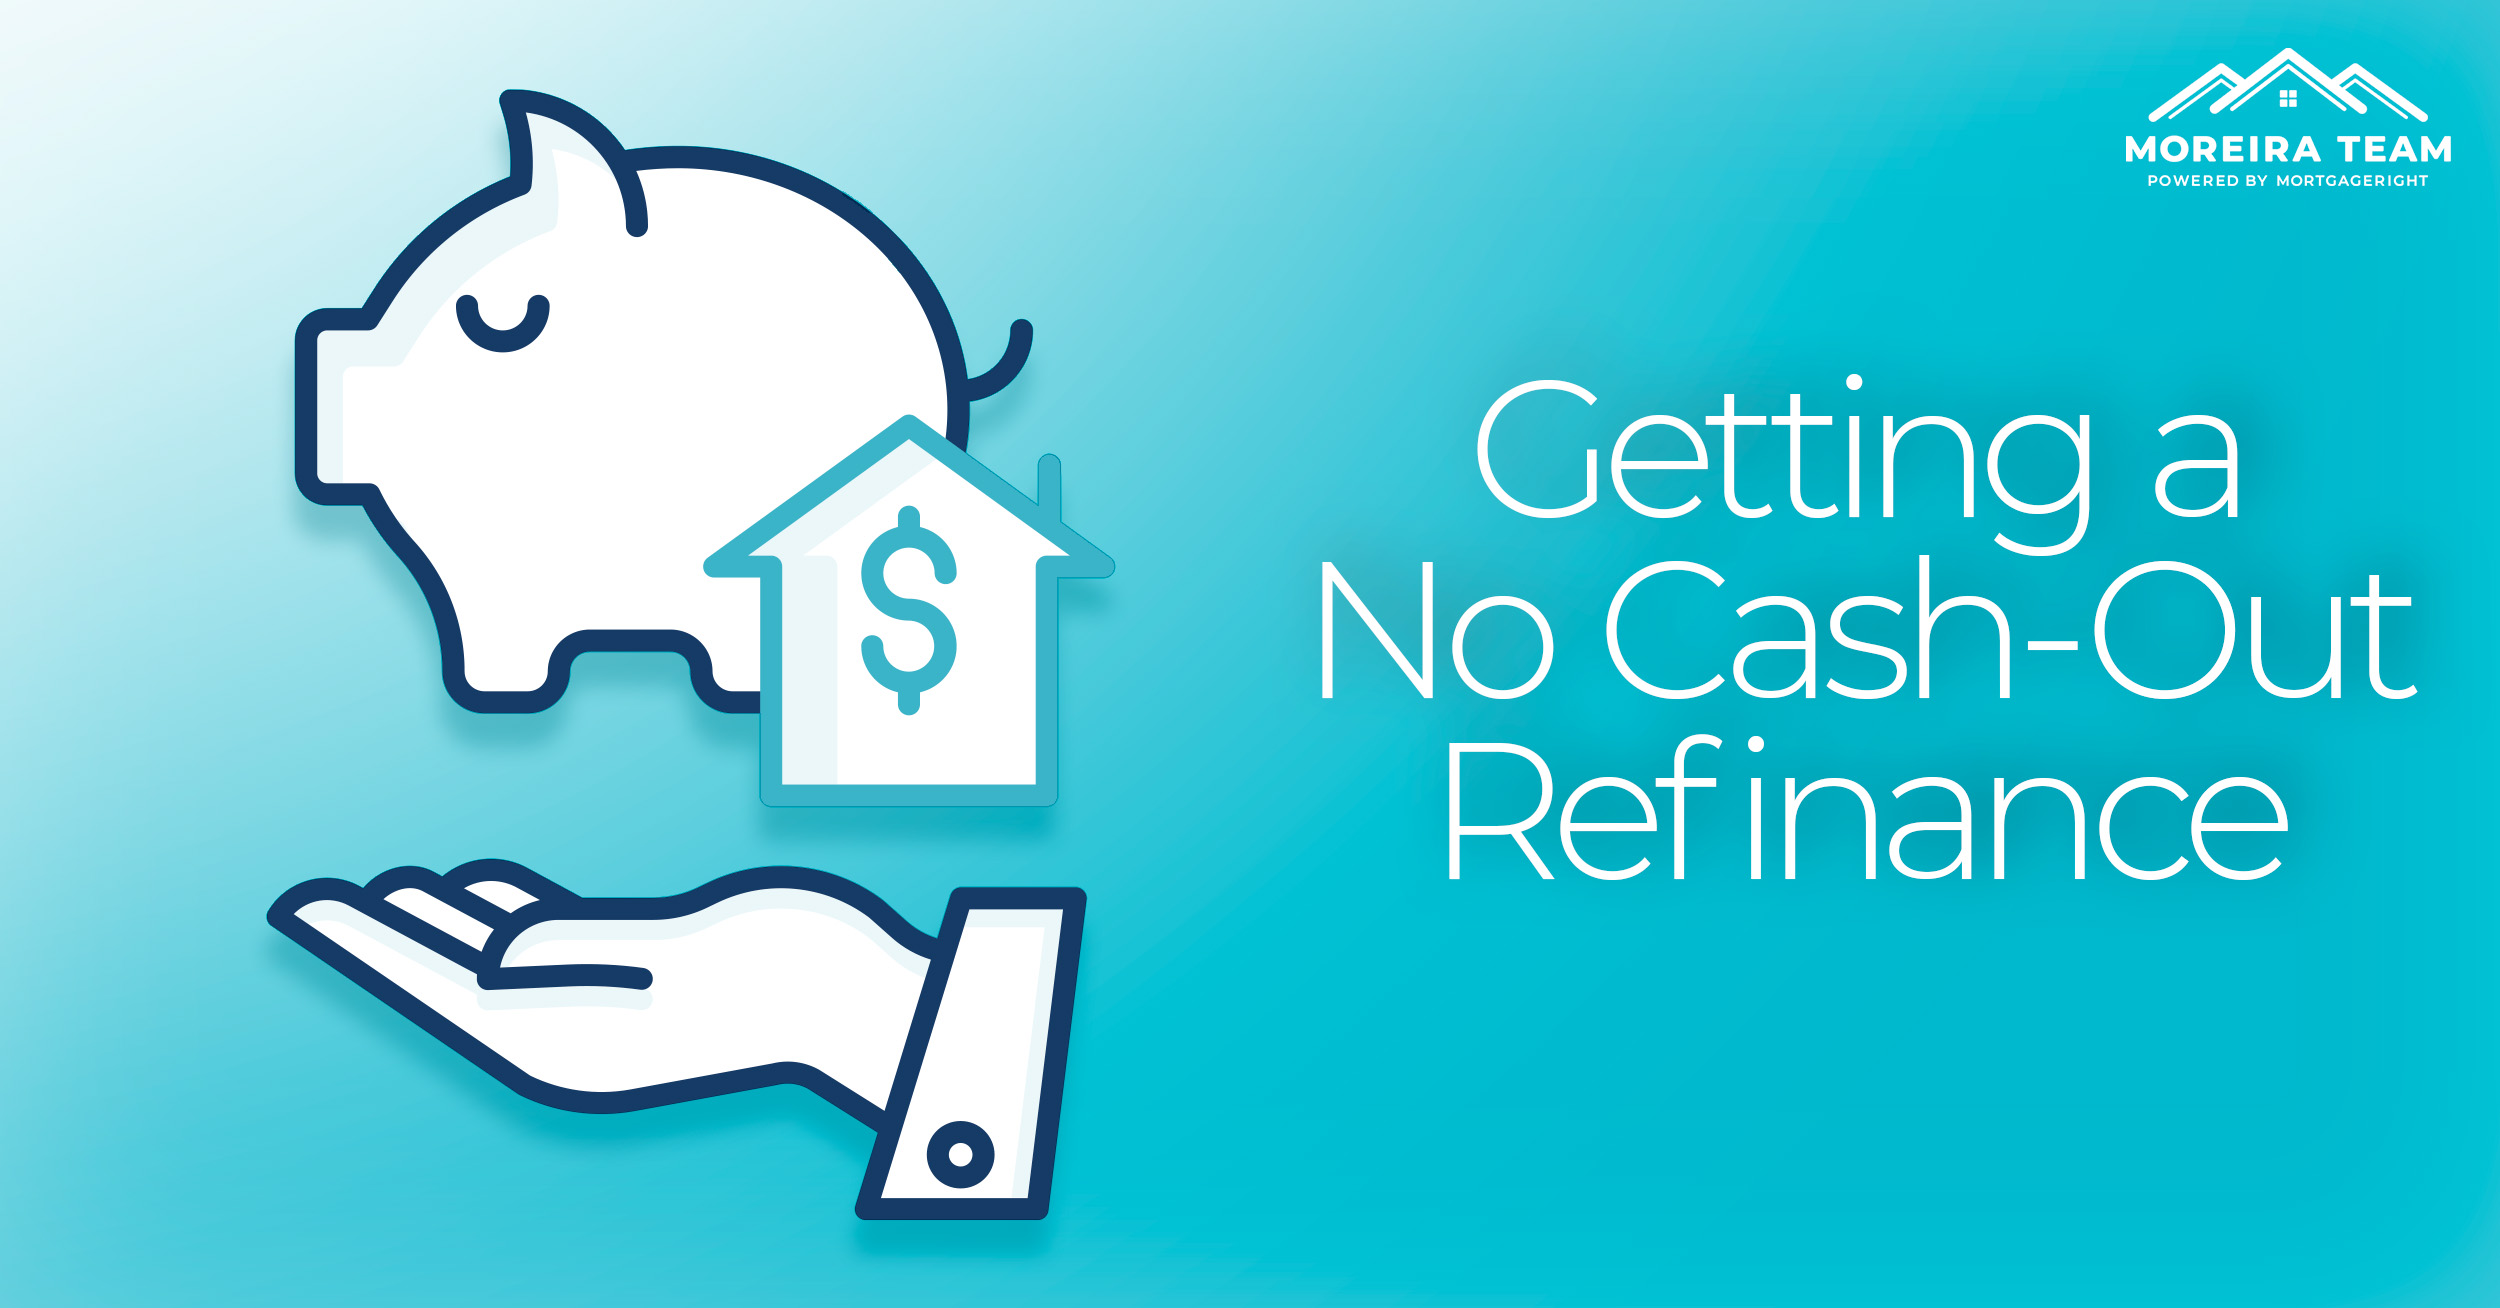 Getting a no cashout refinance loan